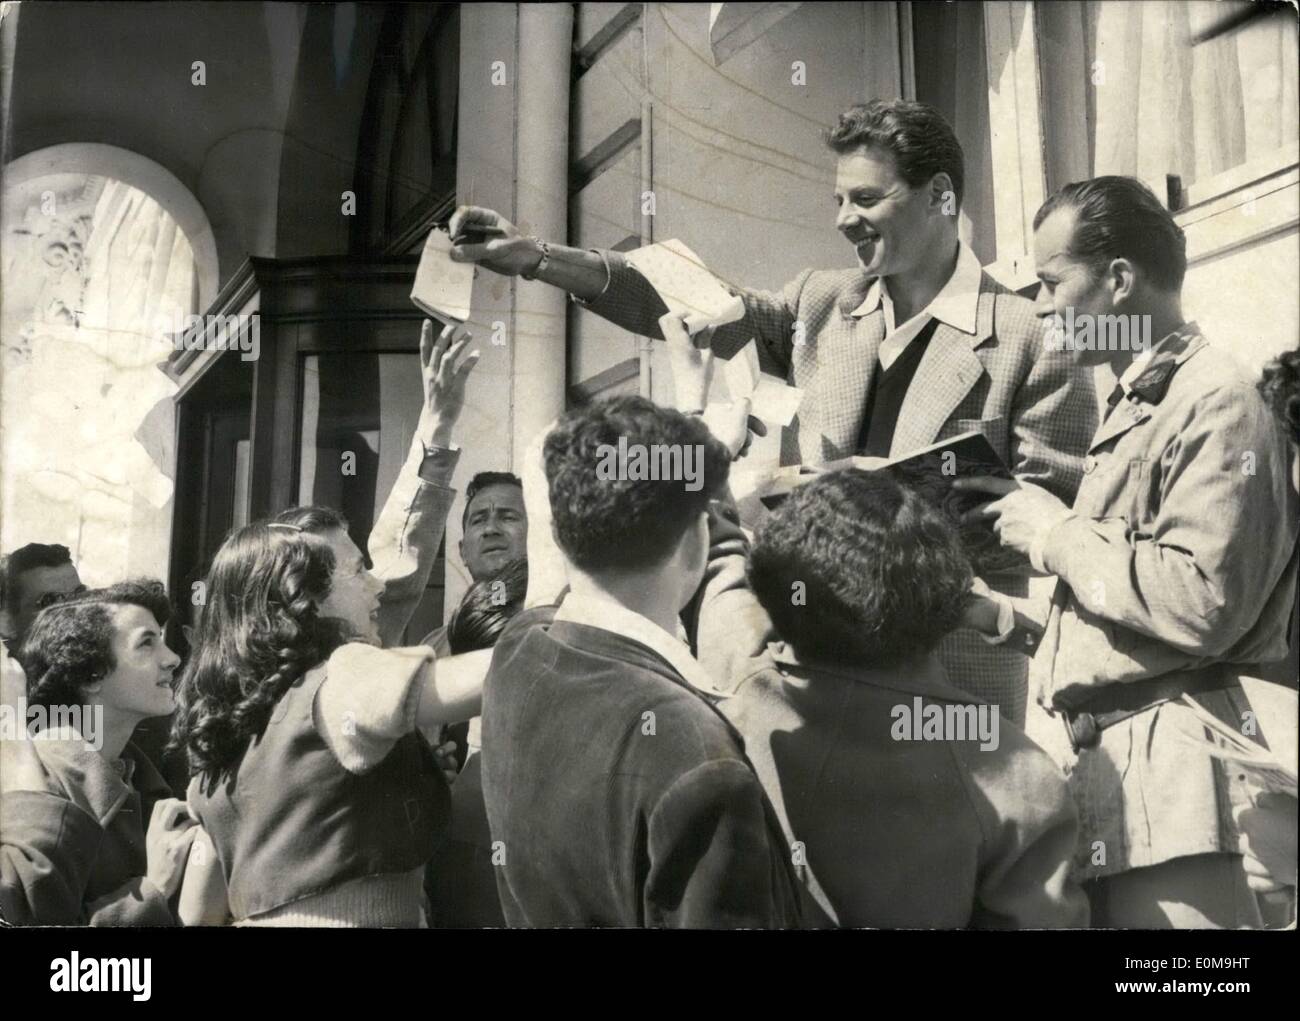 Abril 04, 1954 - Festival de Cine de Cannes: famoso actor francés Jean-Pierre Aumon 3 asediada por amigos de autógrafos en la Croisette de Cannes, donde están participando en el festival de cine. Foto de stock